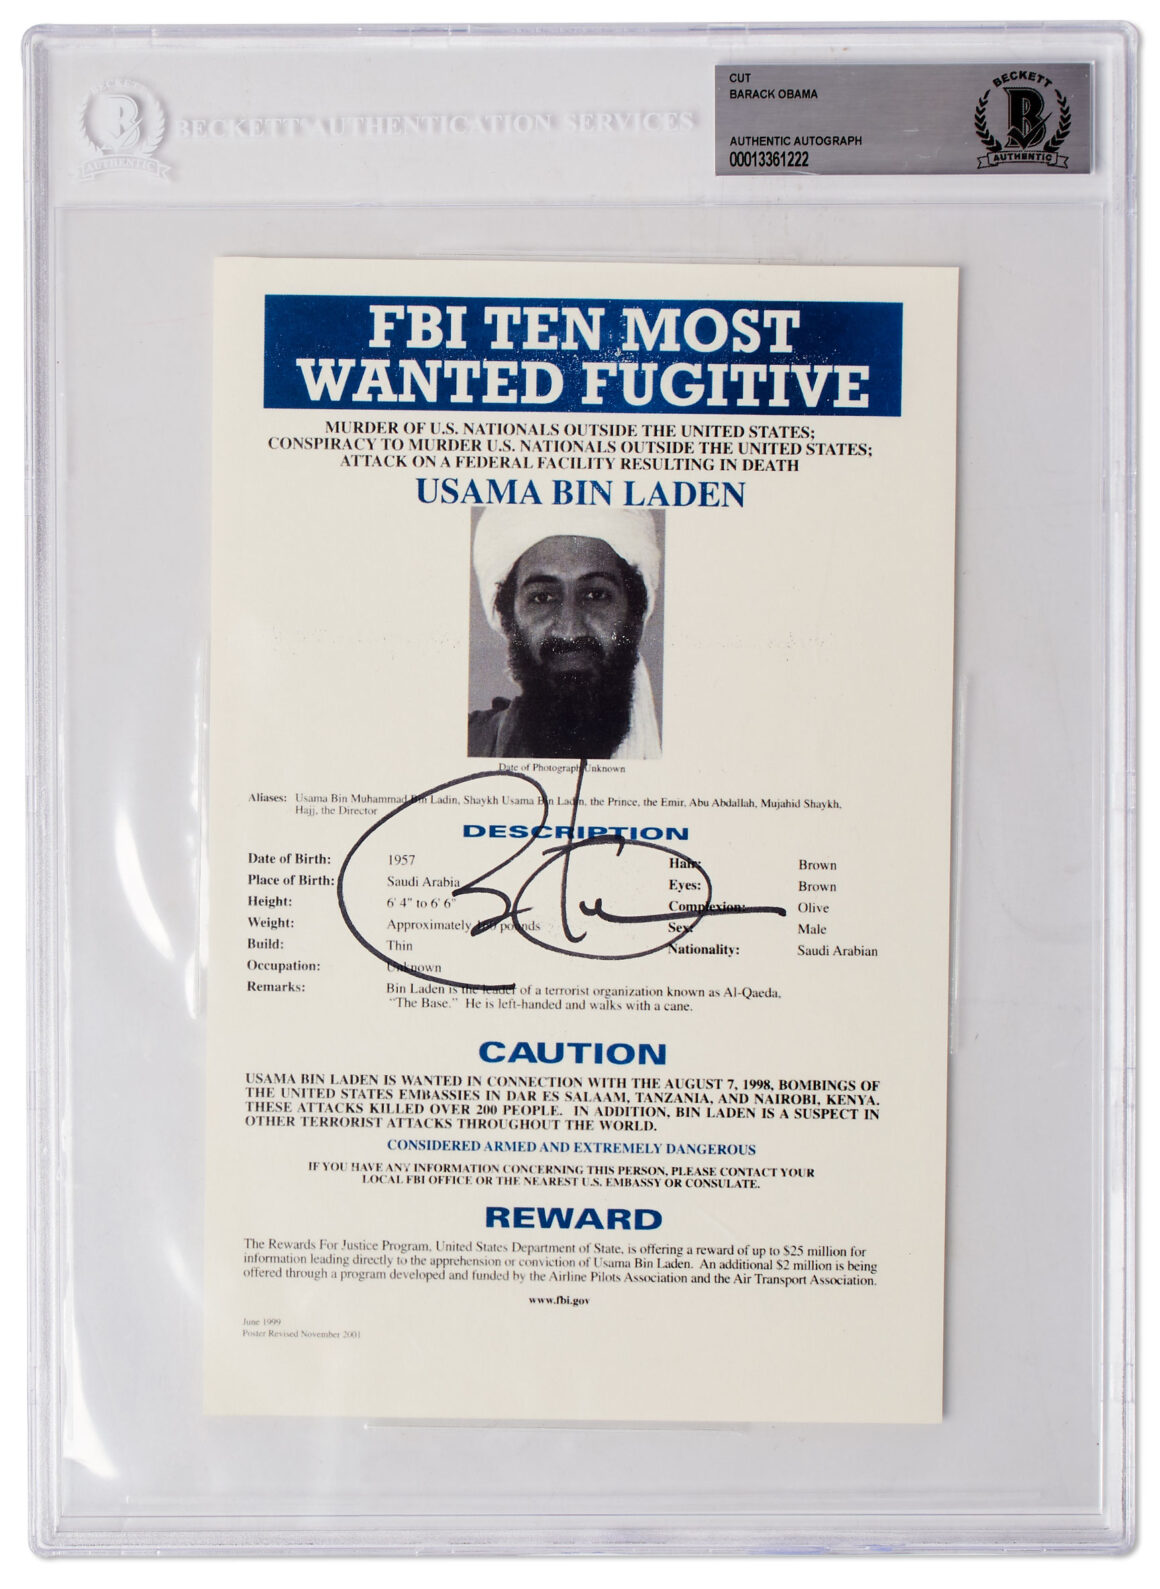 Inanilmaz Tarihi Fotograflar Seti Fotografcilar ve Konular Tarafindan Imzalandi Obama FBI